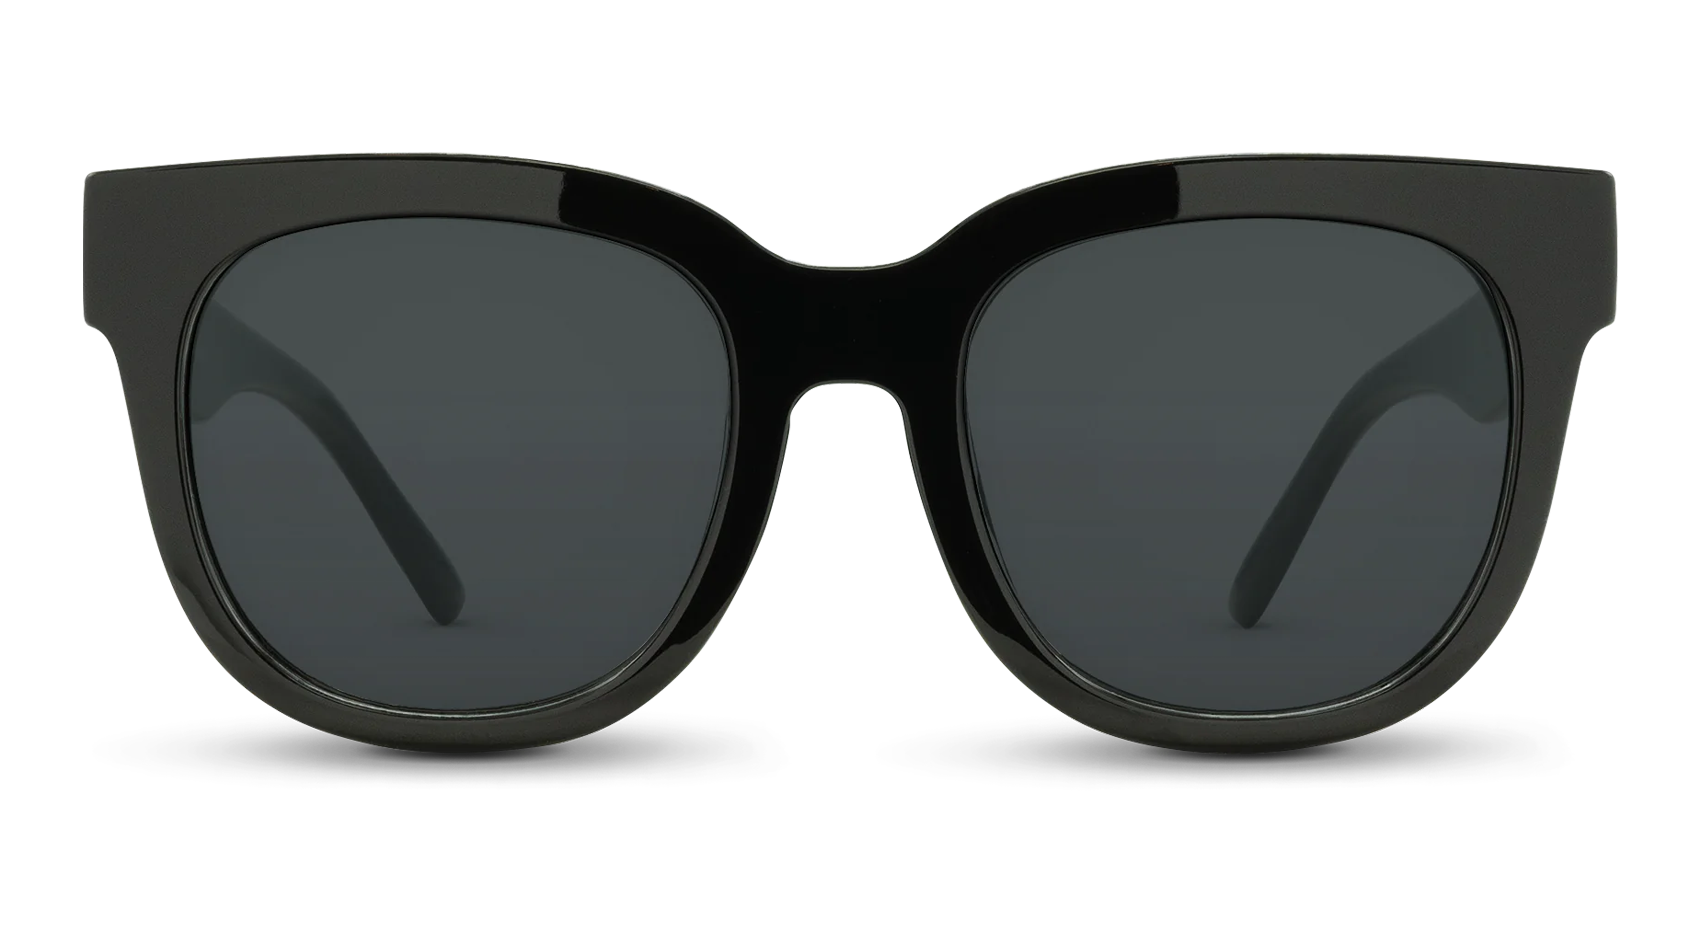 Buy Super Dark Lens Sunglasses for sensitive eyes - Online at  desertcartSeychelles